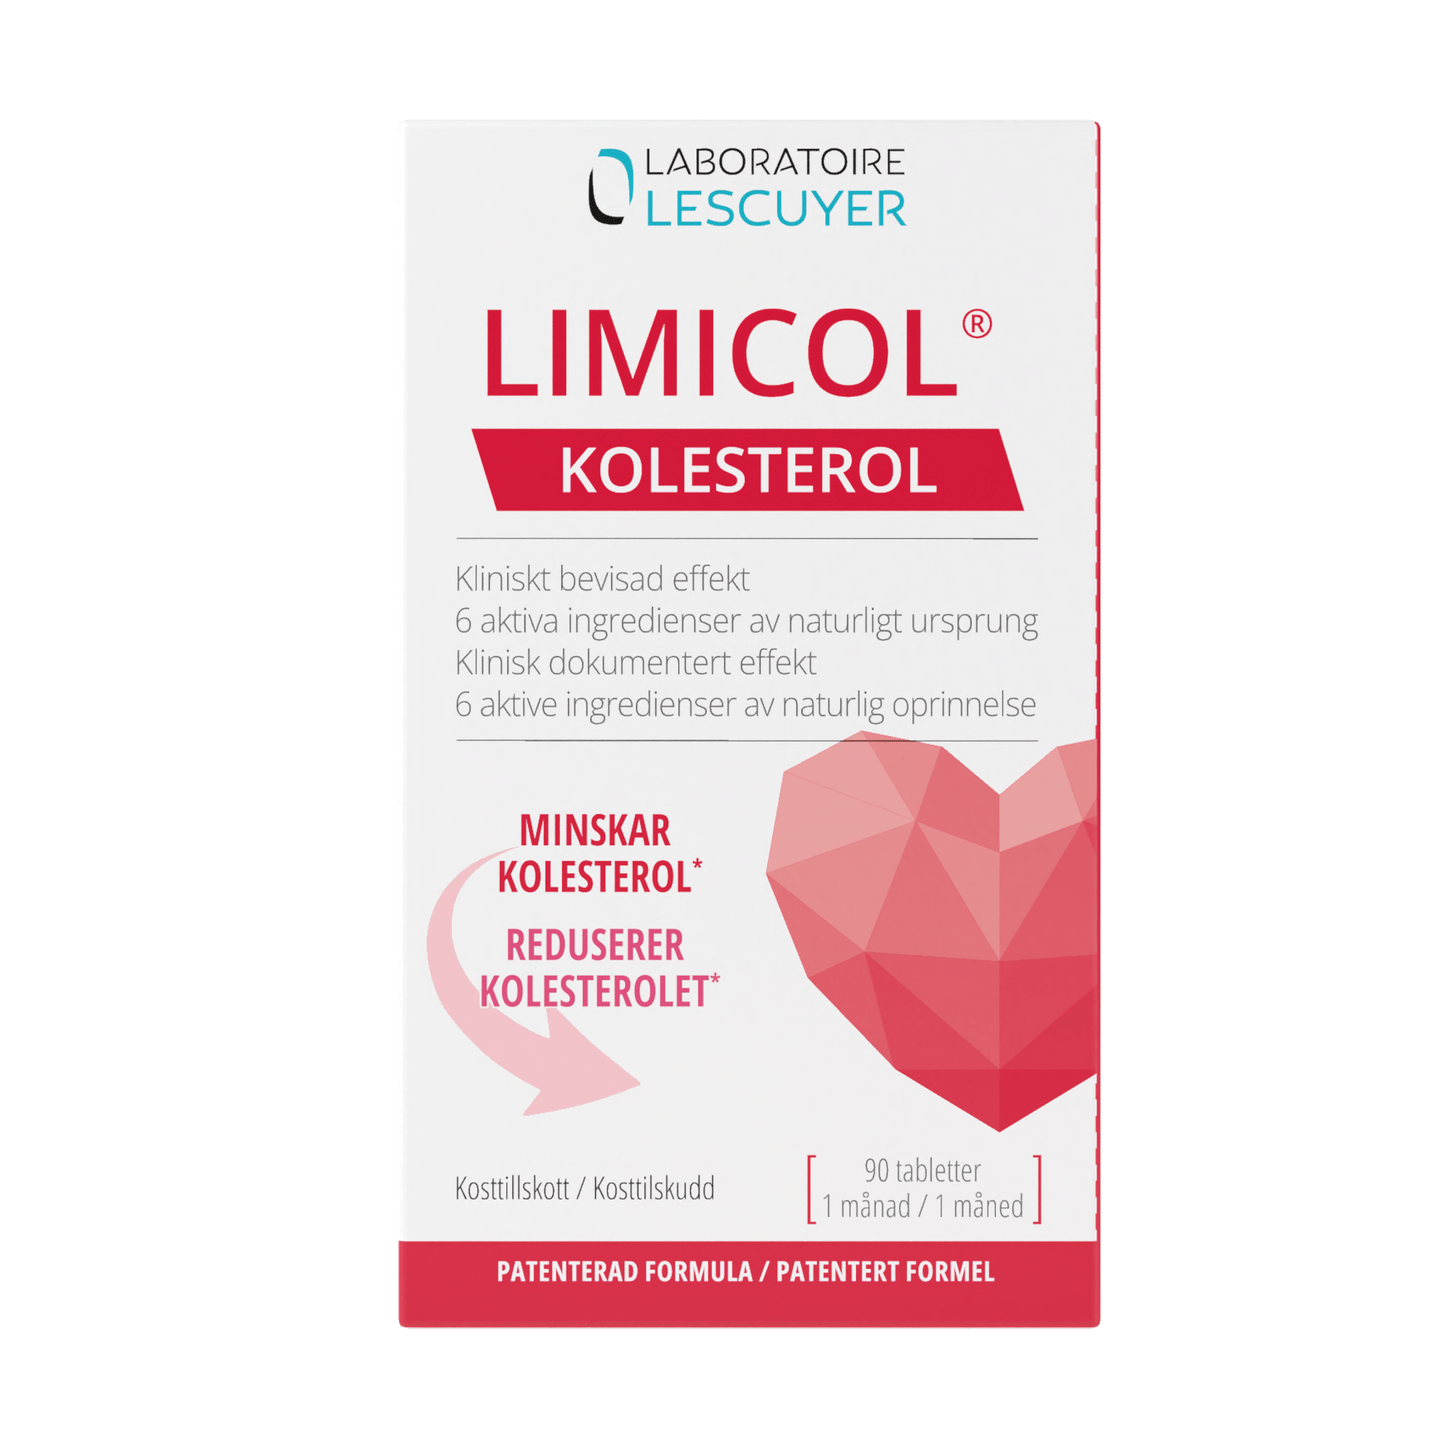 LIMICOL - Limicol